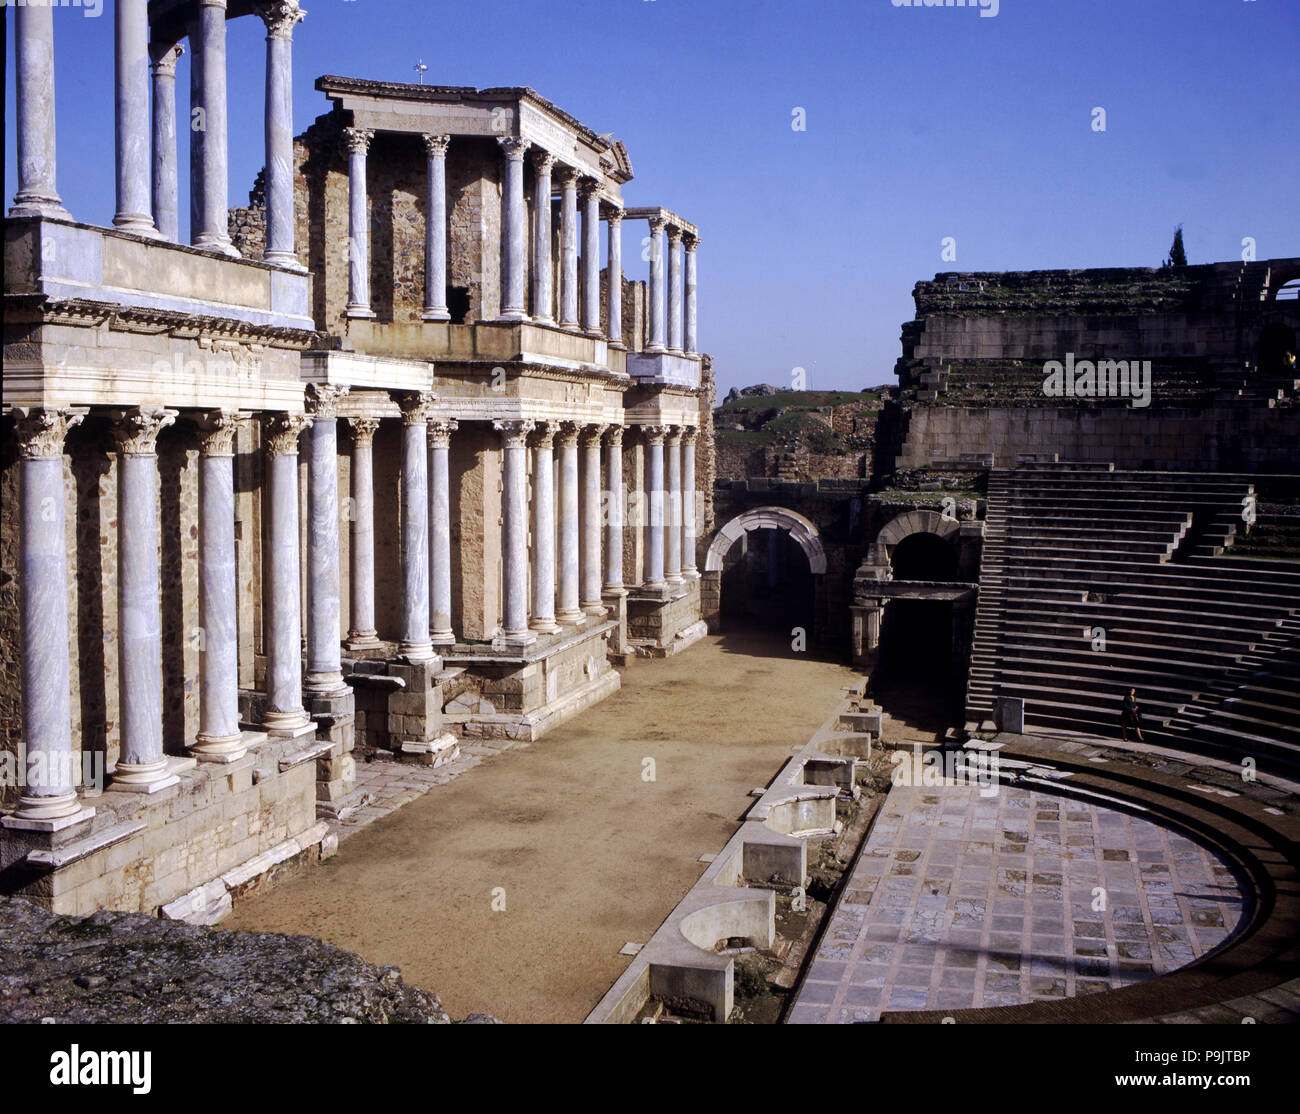 Das römische Theater von Merida, Detail der Szene namens "Orchester", hat zwei Etagen mit Spalten ... Stockfoto